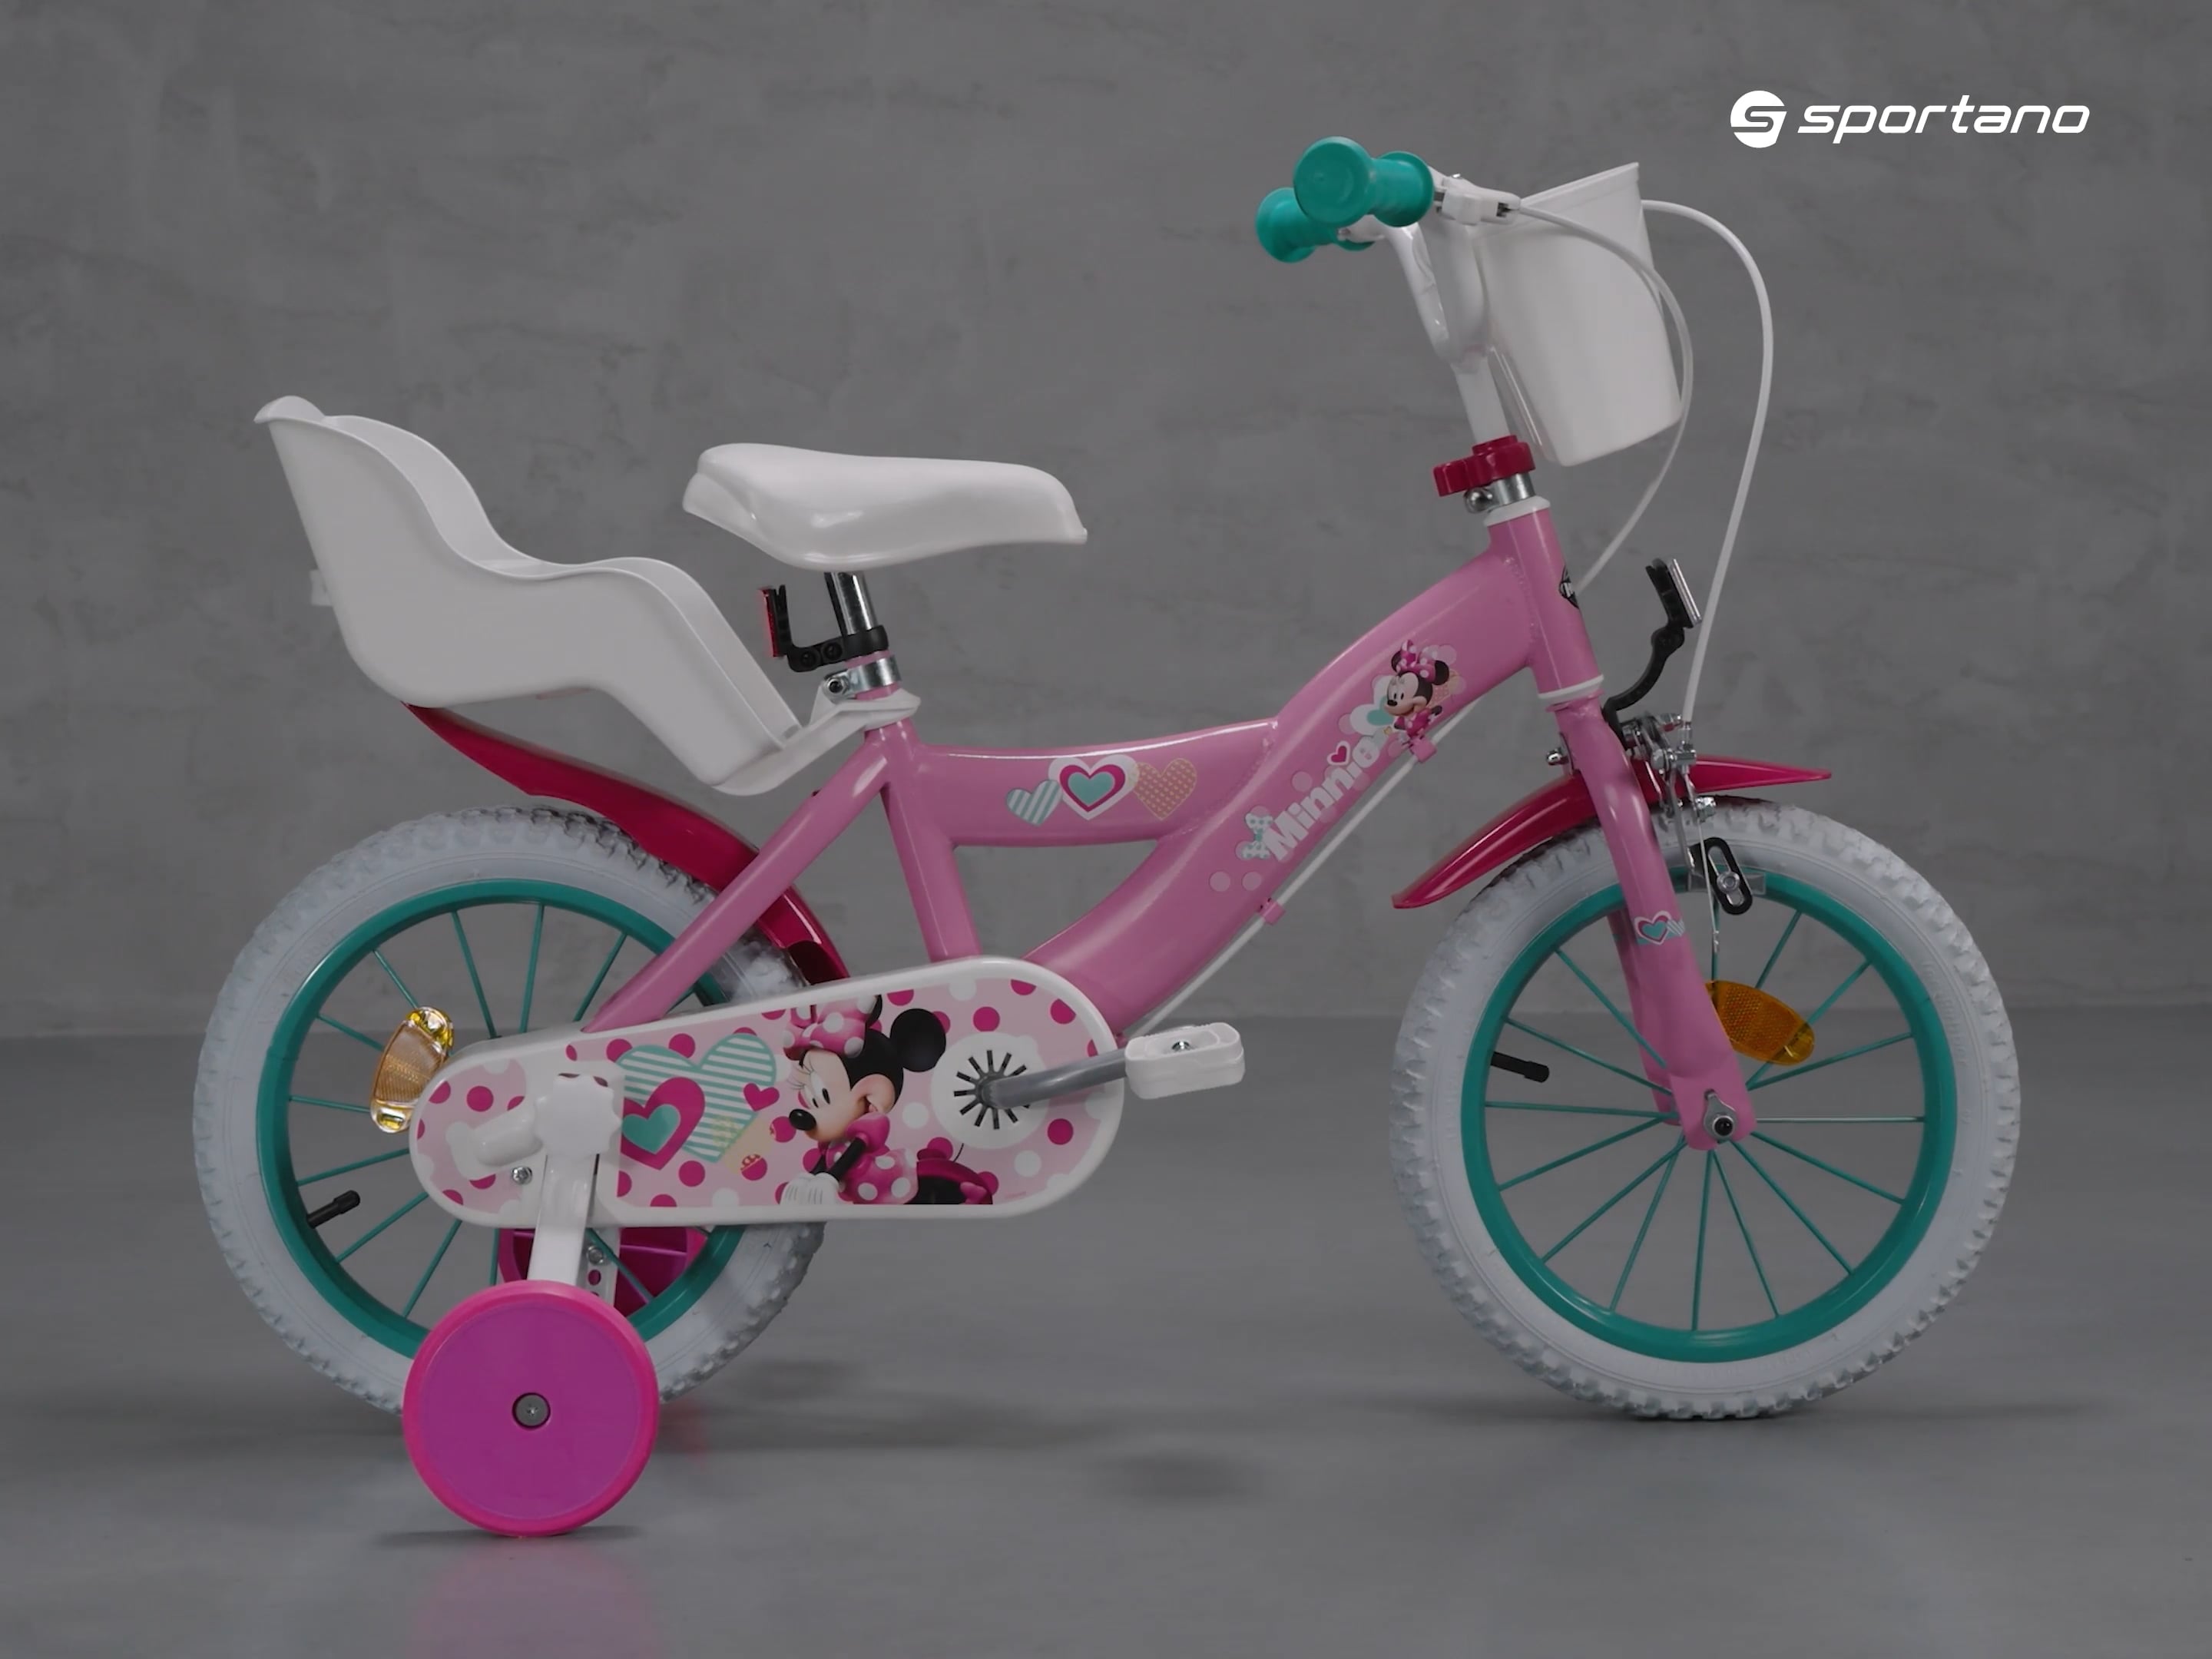 Huffy Minnie bicicletă pentru copii roz 24951W